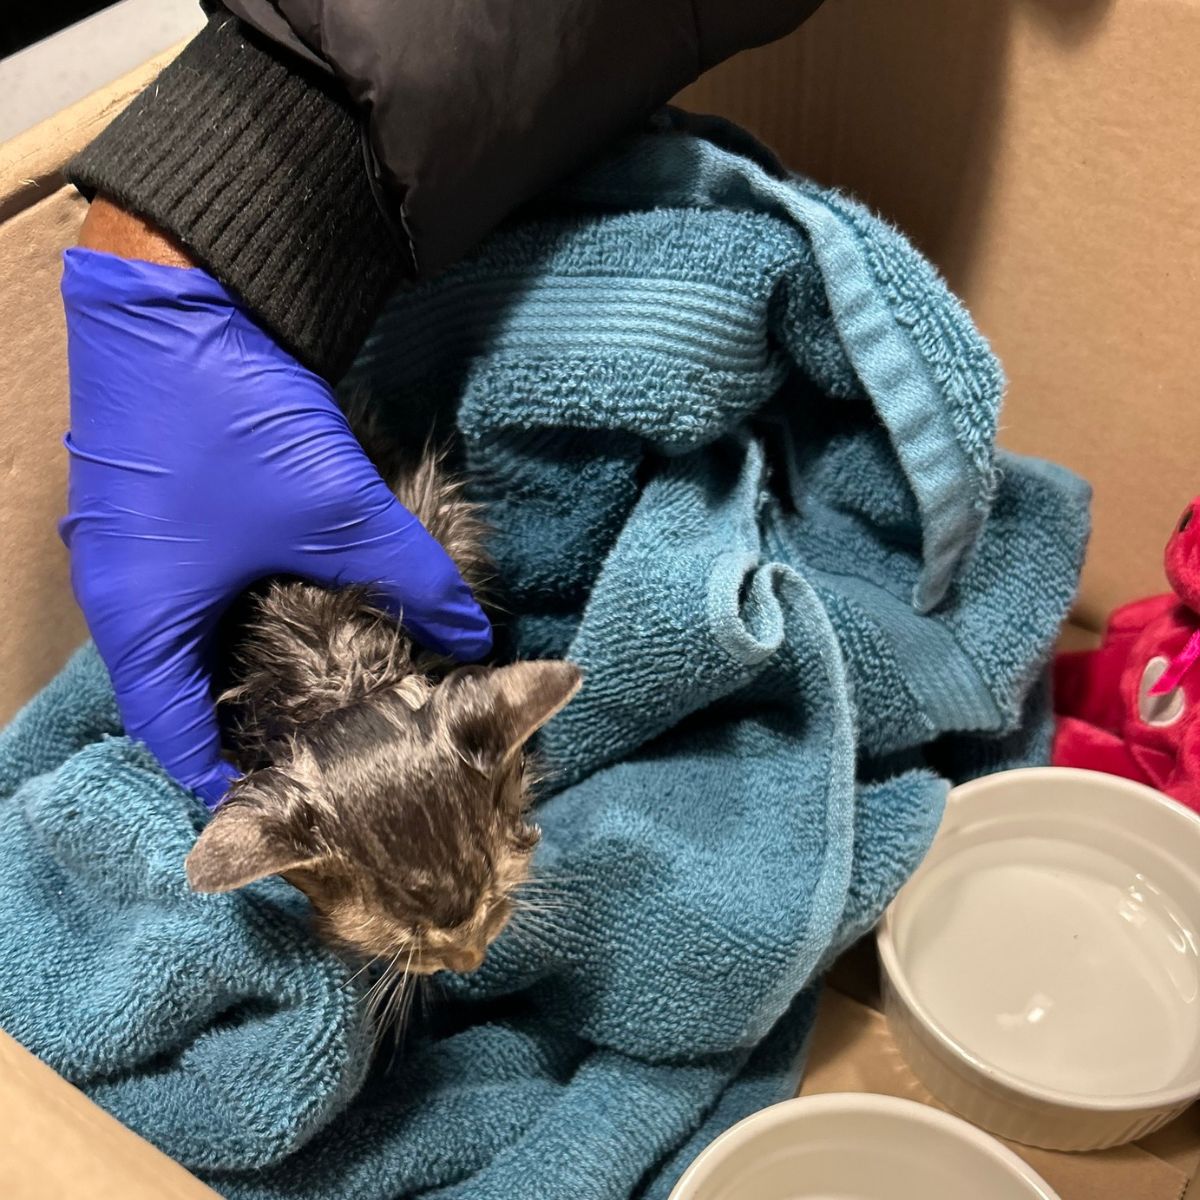 rescued kitten in a box